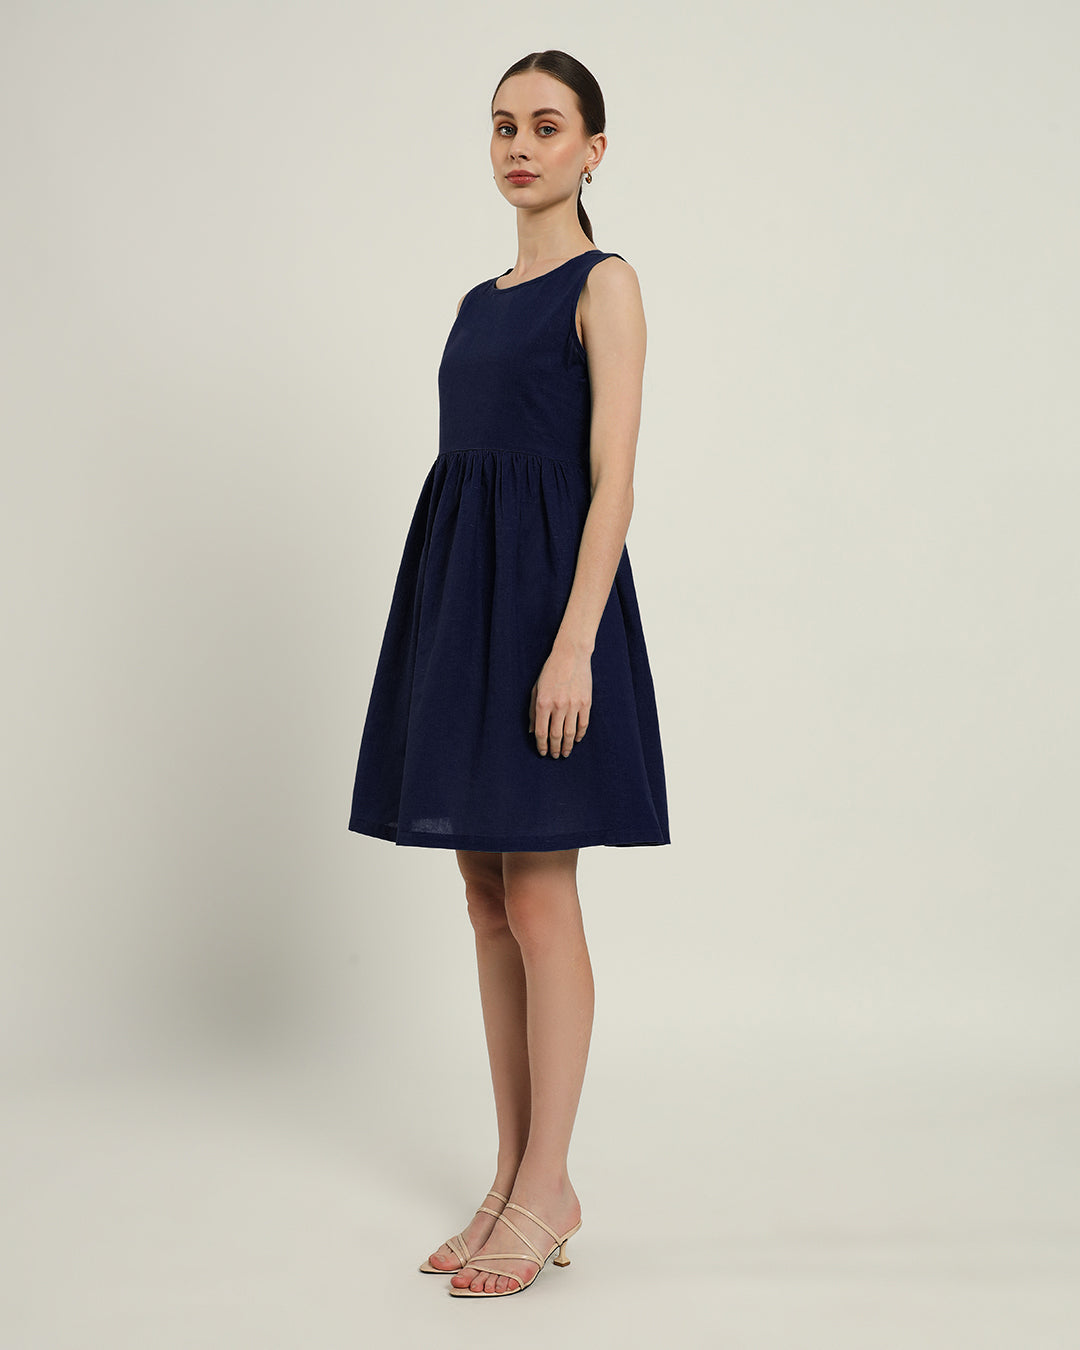 The Chania Daisy Midnight Blue Linen Dress